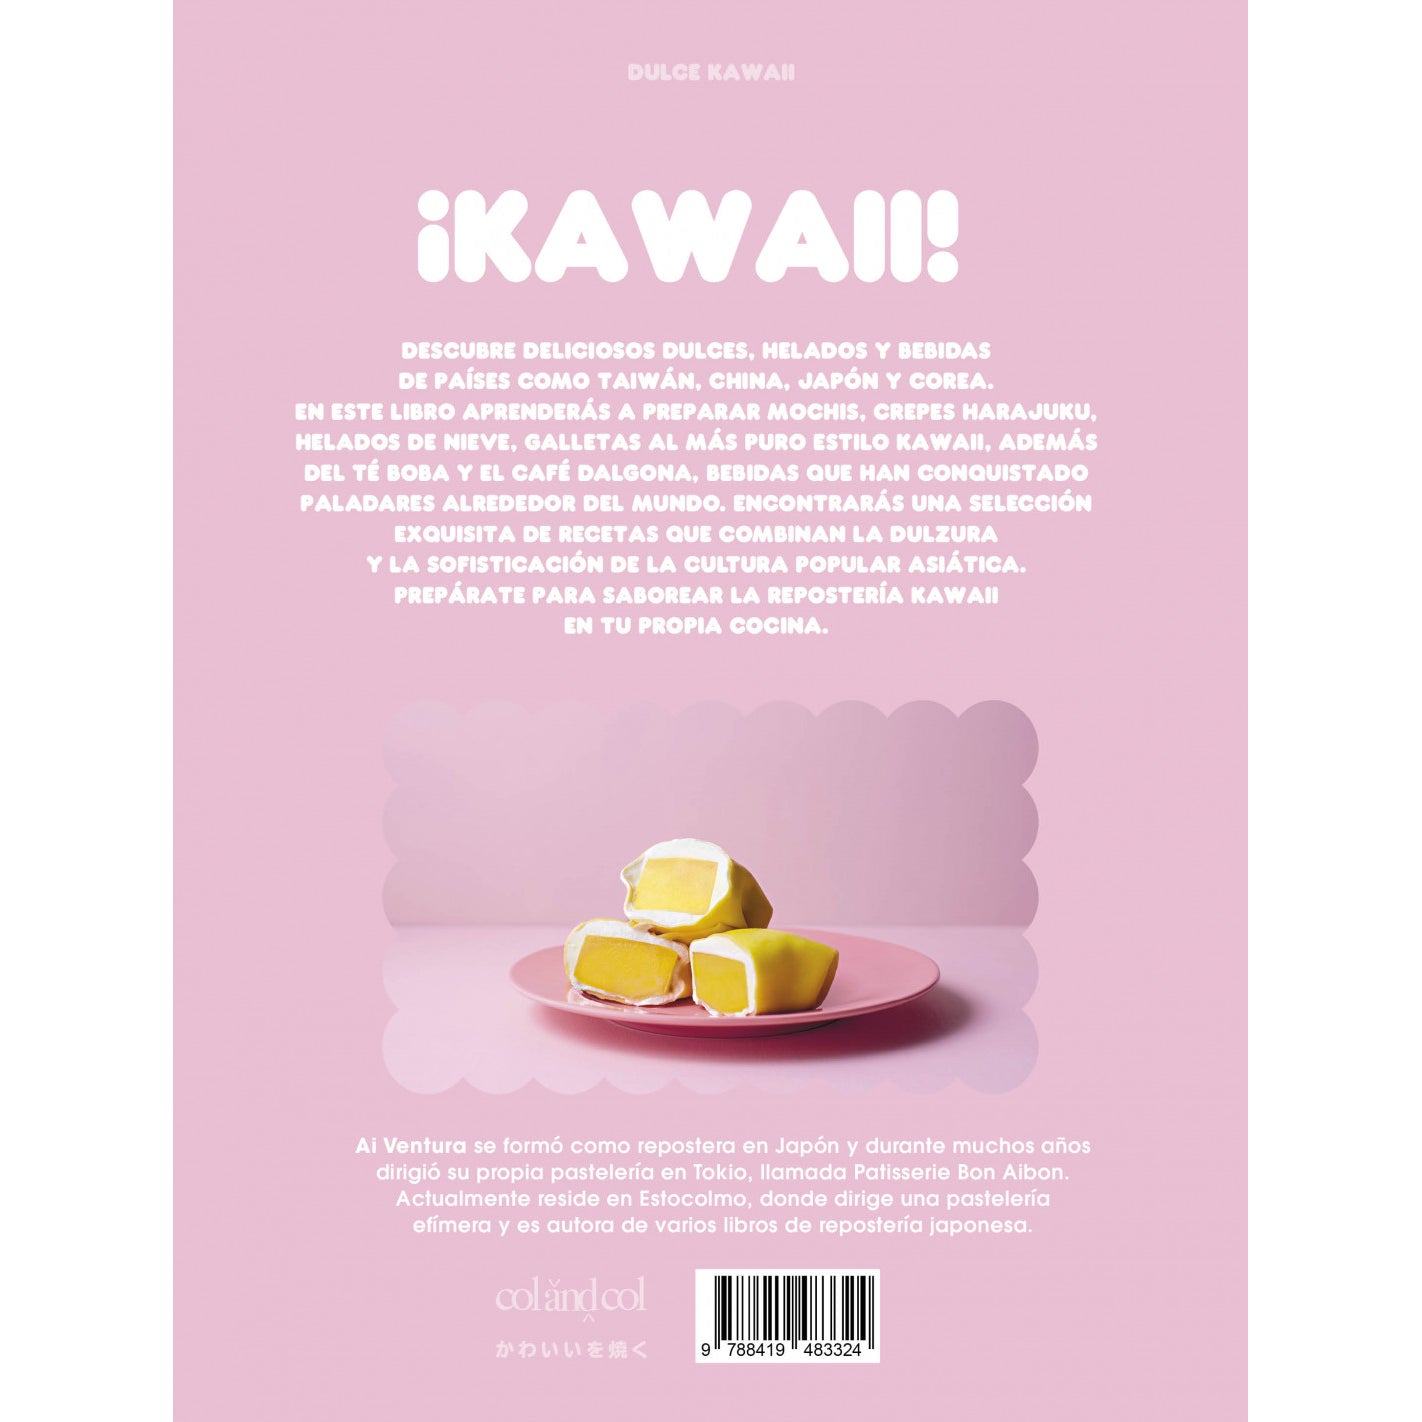 Contraportada del libro de Cocina Dulce Kawaii